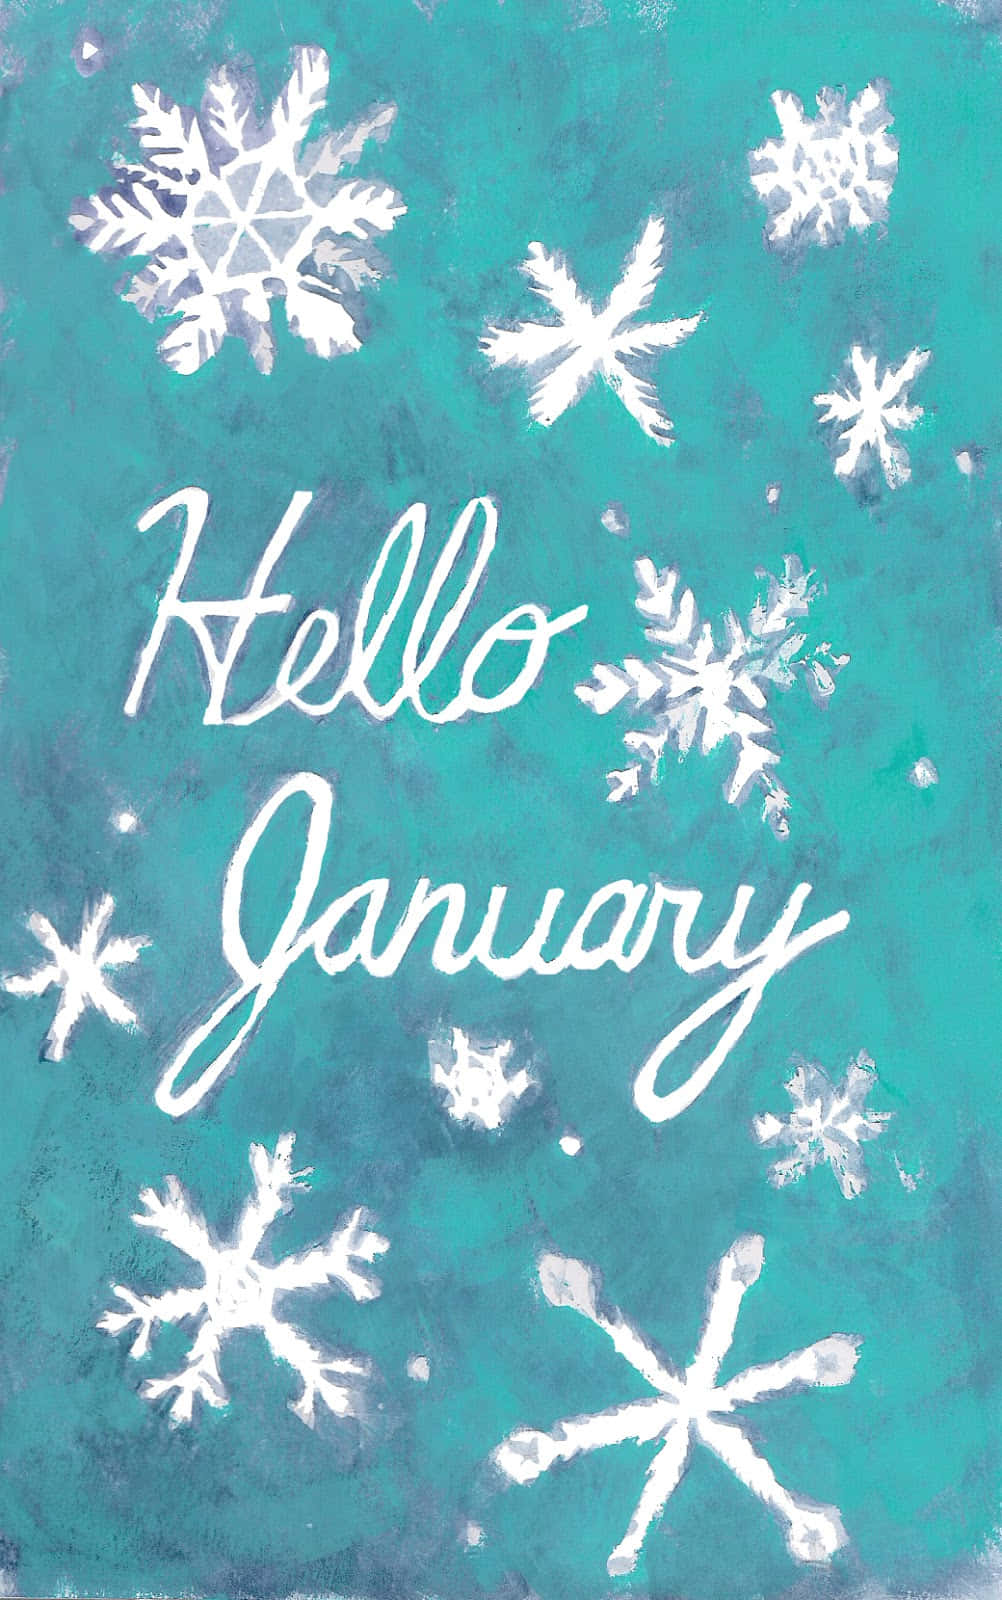 Hello January - Watercolor - January - January - January - January Wallpaper